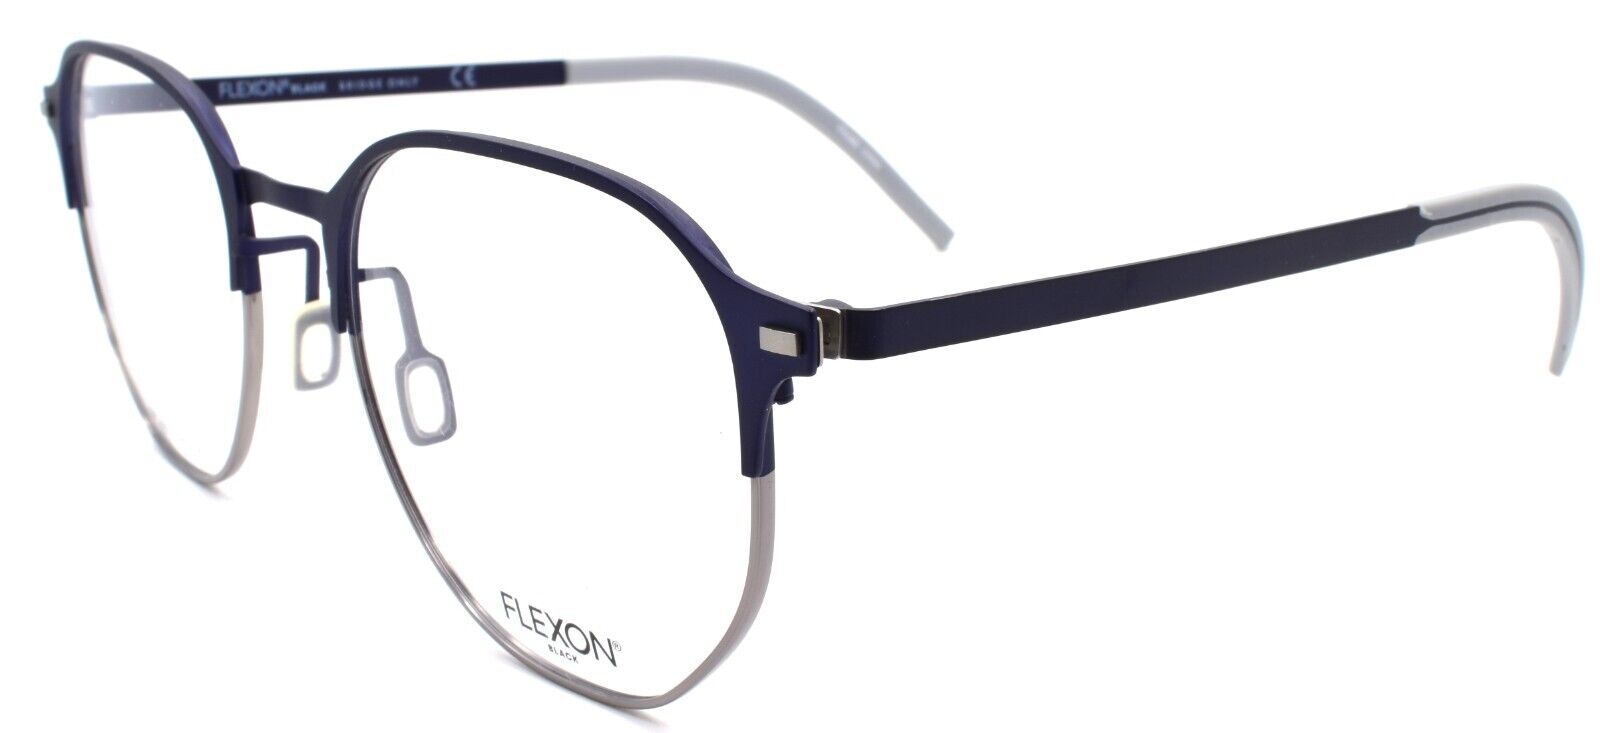 1-Flexon B2032 412 Men's Eyeglasses Navy 52-20-145 Flexible Titanium-883900205245-IKSpecs